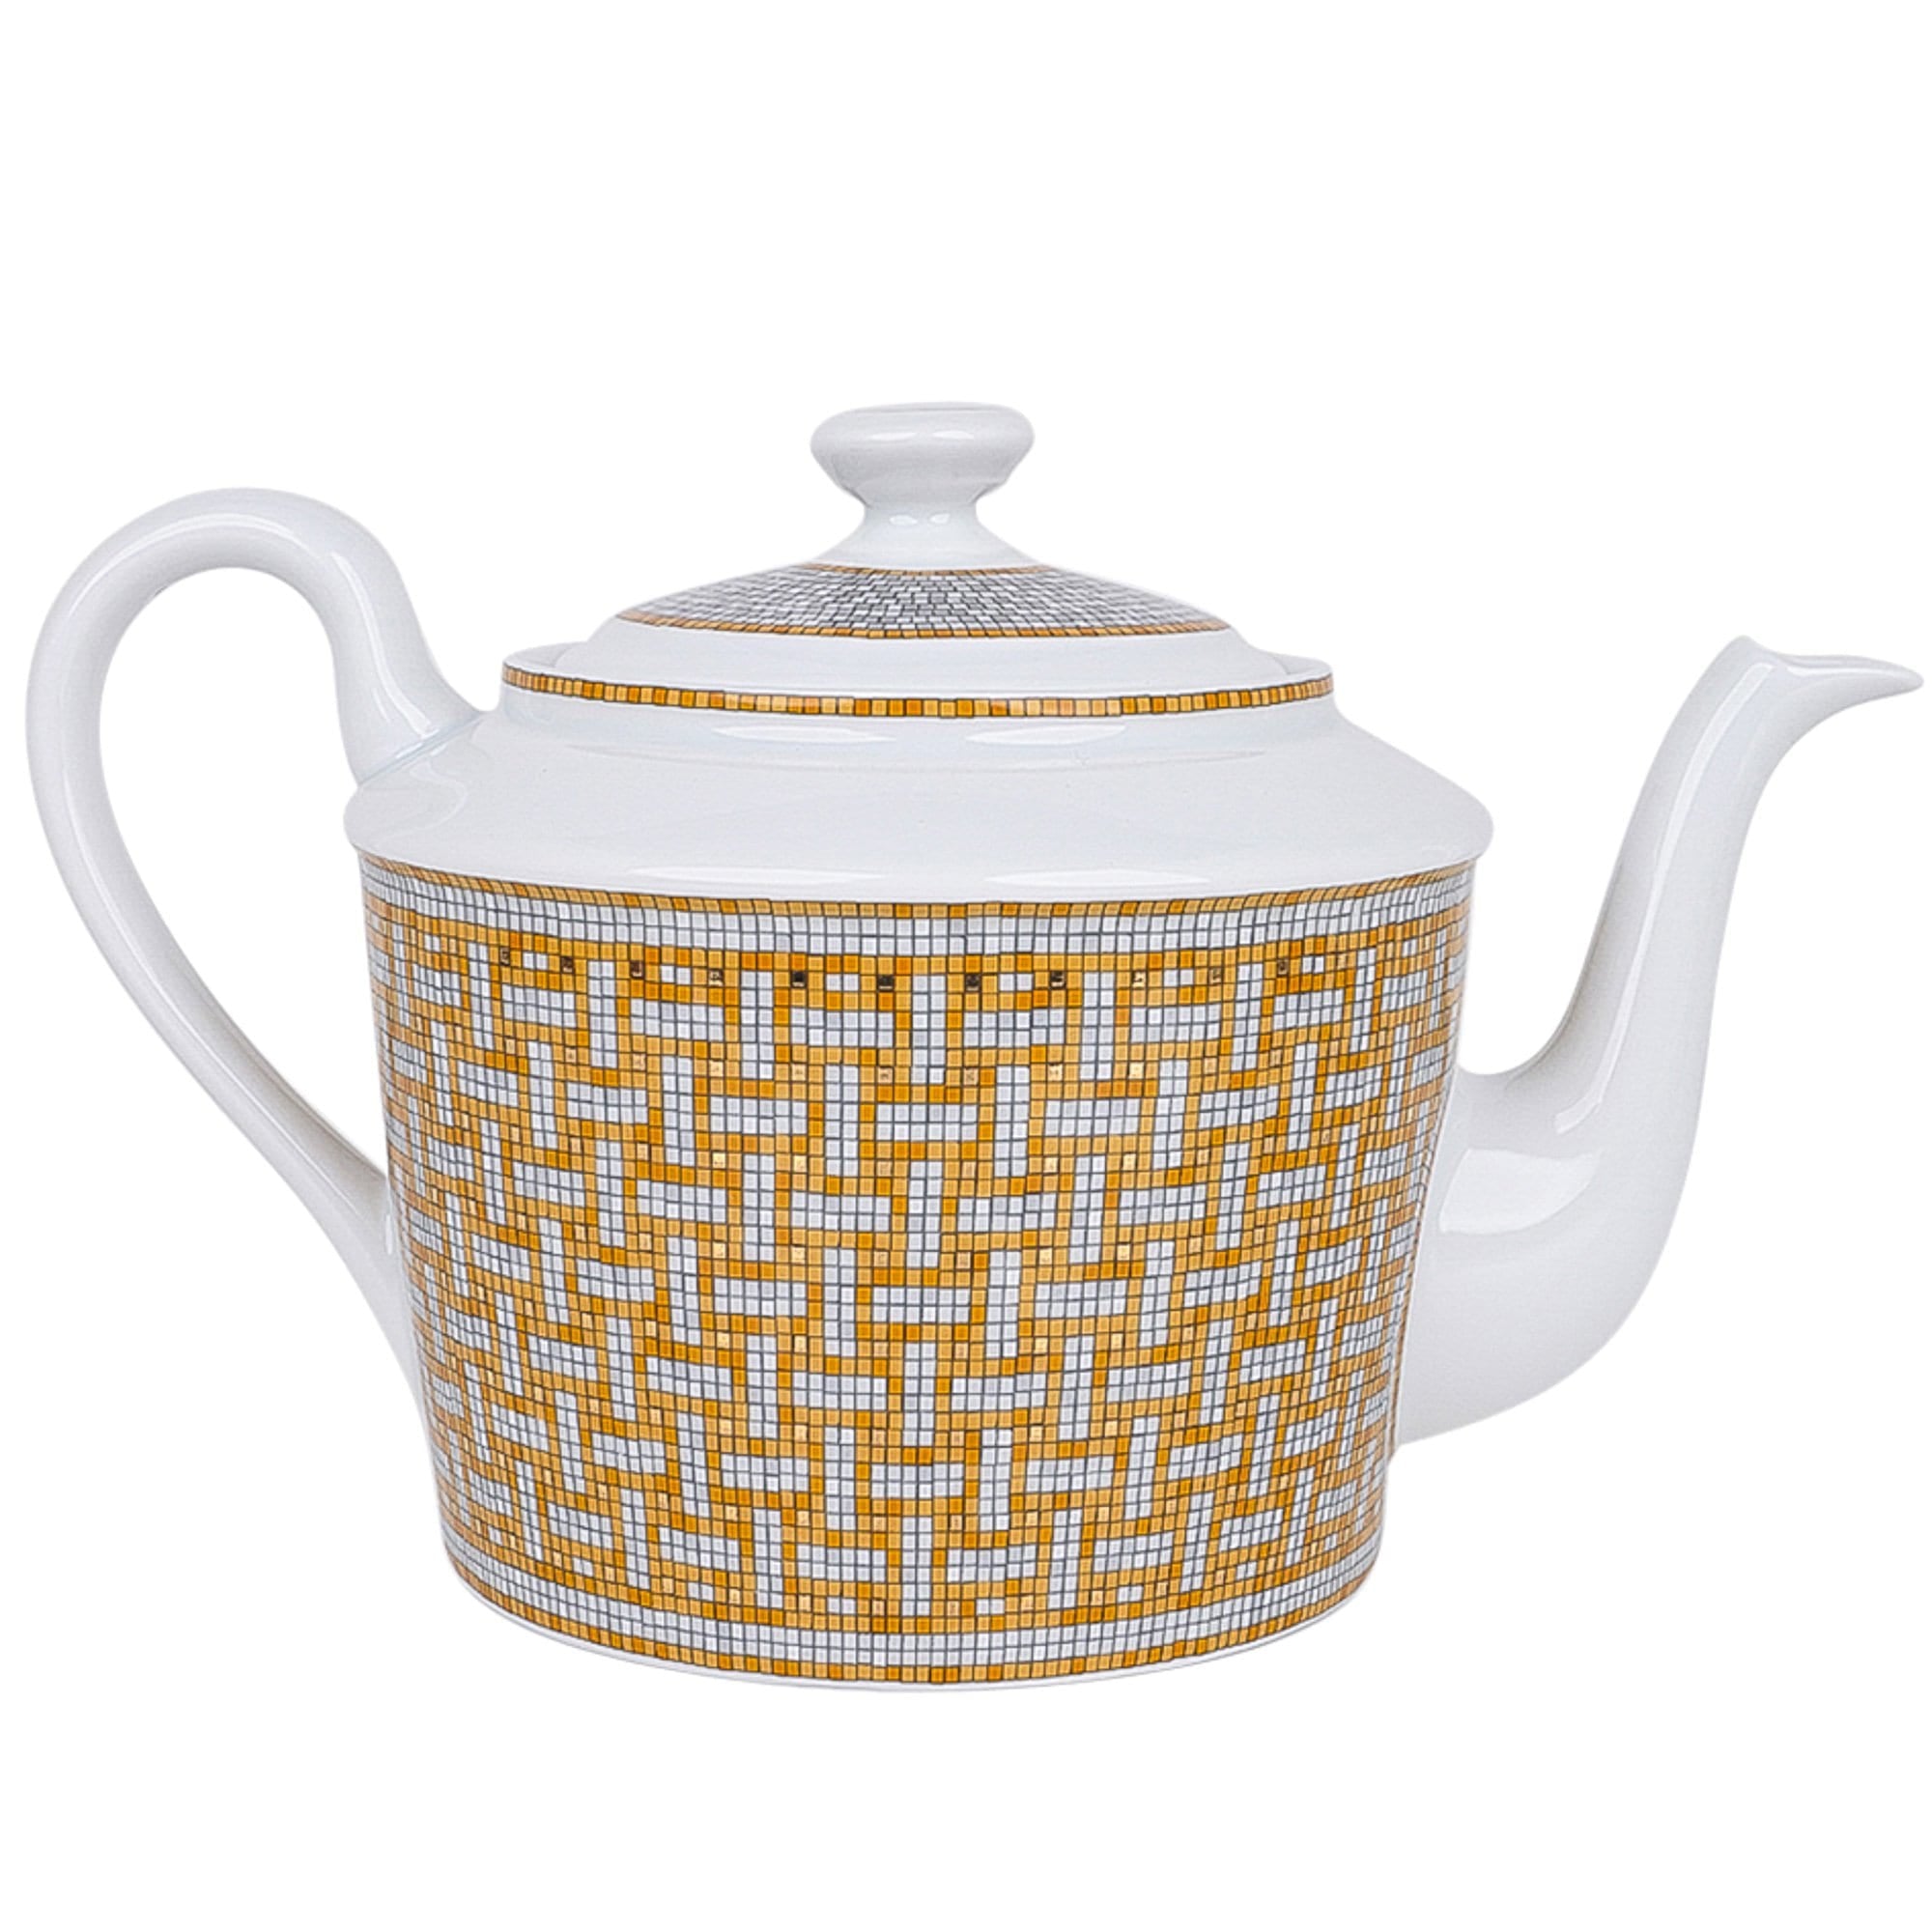 Sold at Auction: Hermes Paris Mosaic Tea Set (15 Pieces)